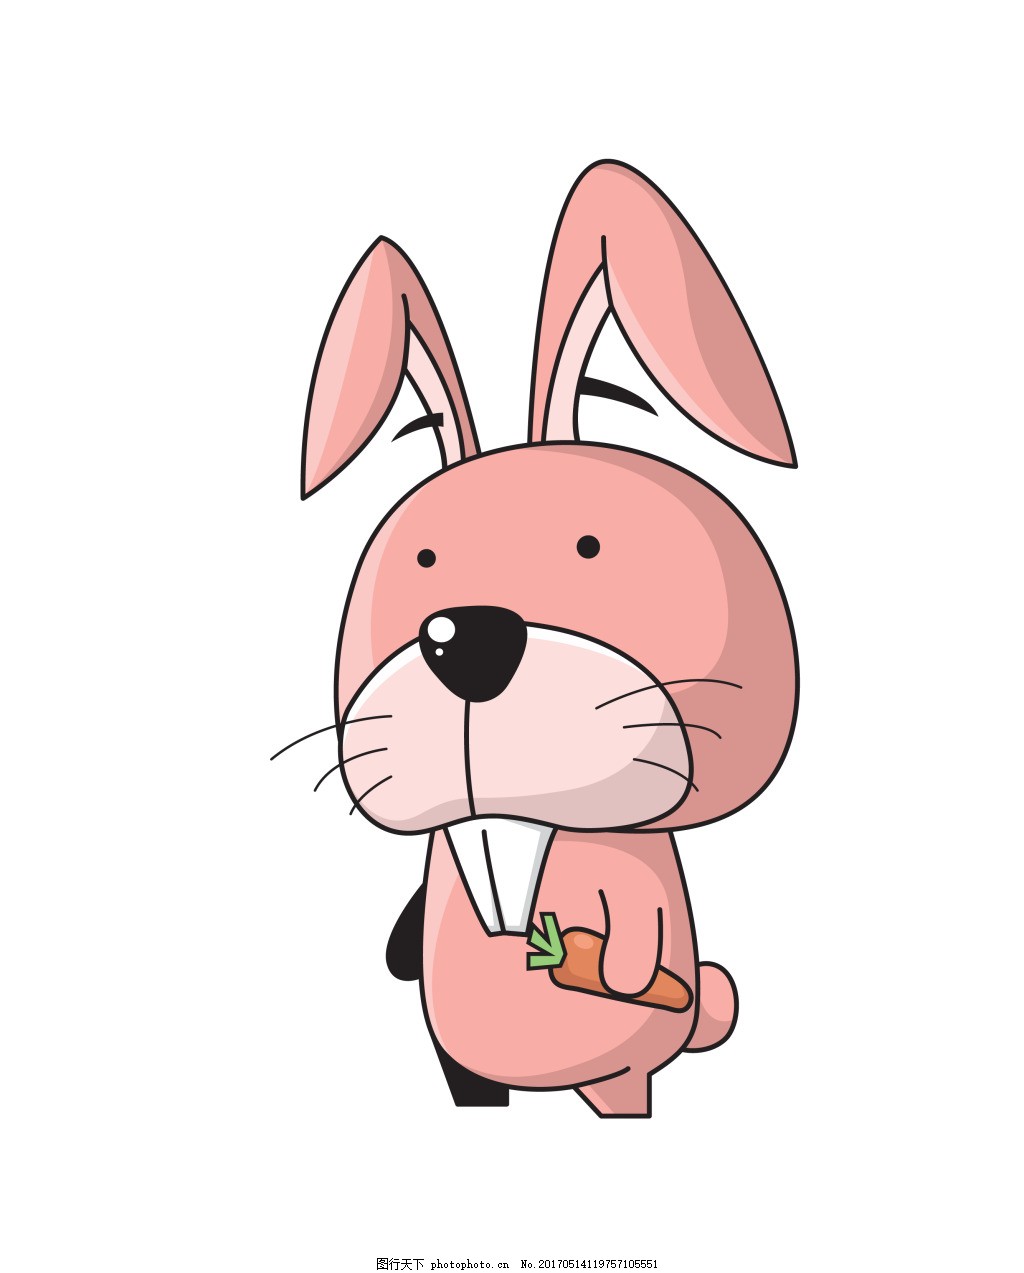 矢量卡通可爱兔子EPS,矢量素材 野生动物 卡通